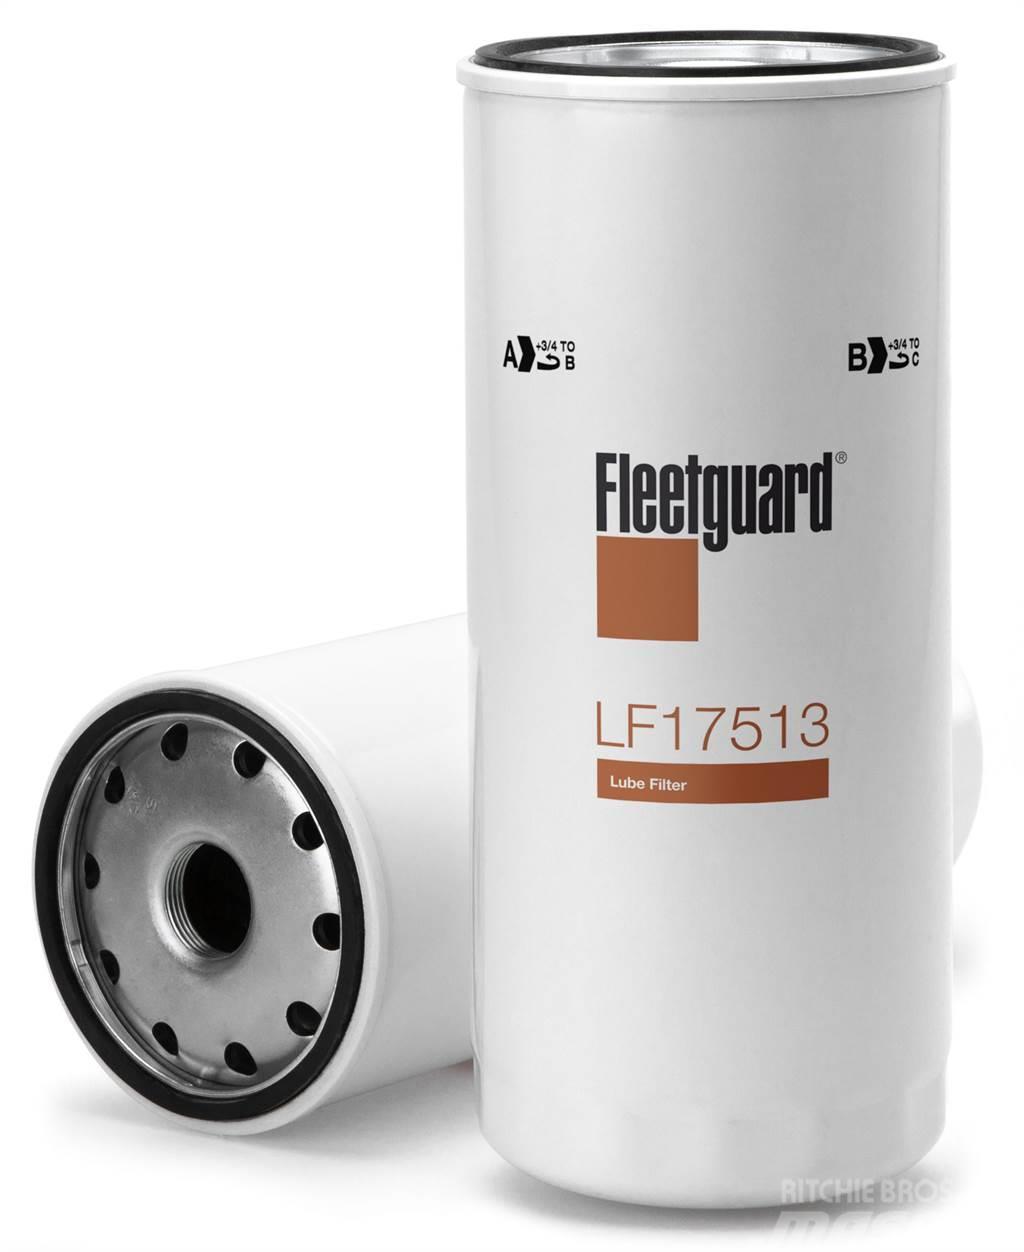 Fleetguard oliefilter LF17513 Anders